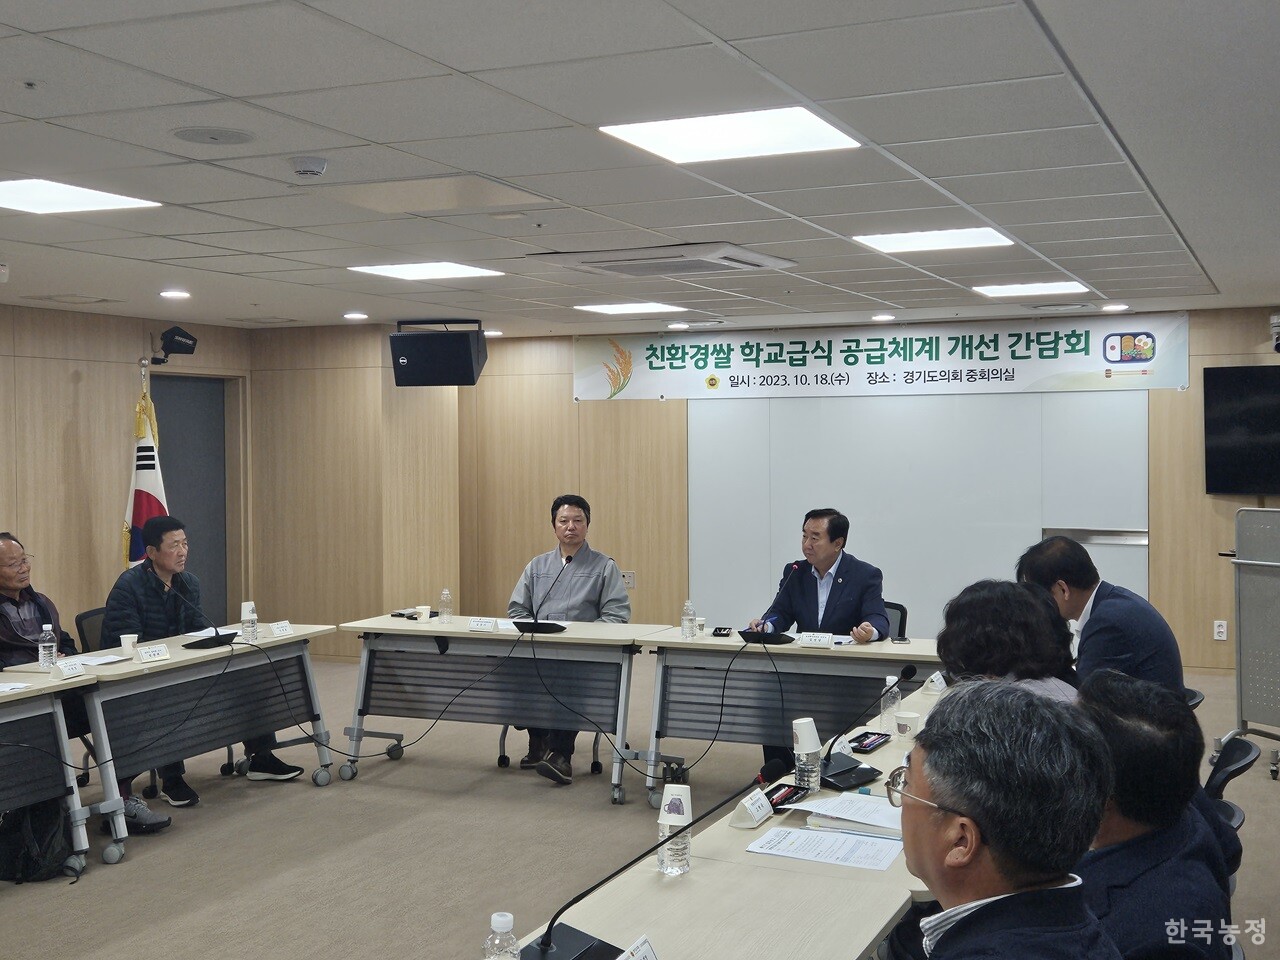 지난 18일 경기도의회 중회의실에서 열린 ‘친환경 쌀 학교급식 공급체계 개선 간담회’에서 김성남 경기도의회 농정해양위원장이 발언하고 있다.